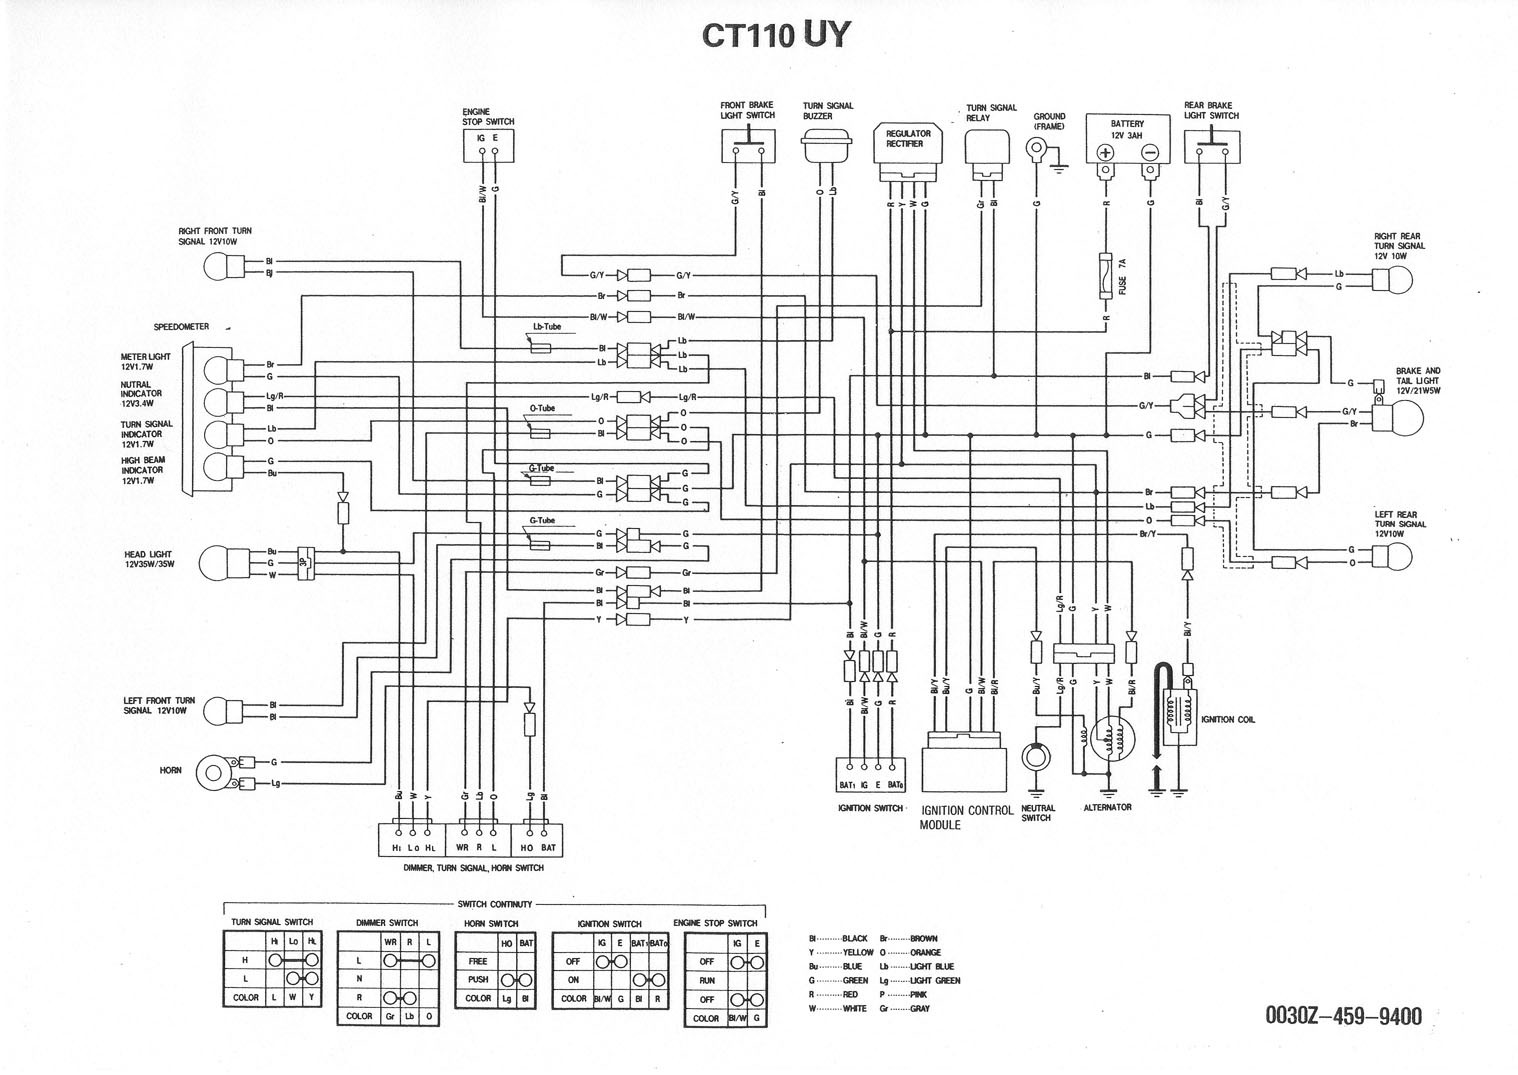 1980 honda ct110 wiring diagram